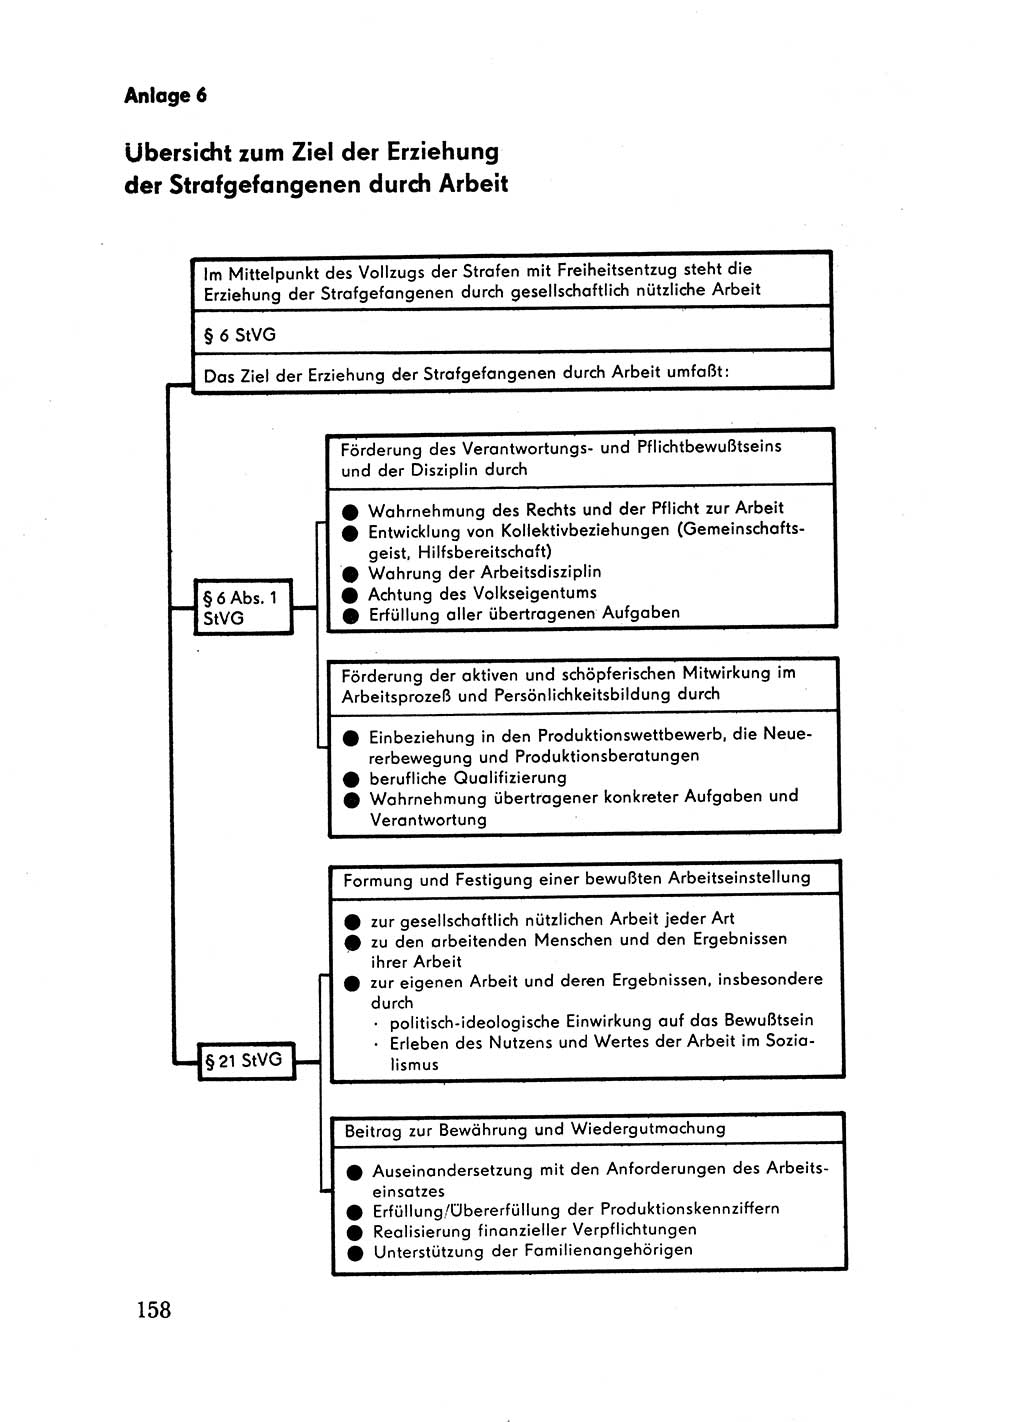 Handbuch für Betriebsangehörige, Abteilung Strafvollzug (SV) [Ministerium des Innern (MdI) Deutsche Demokratische Republik (DDR)] 1981, Seite 158 (Hb. BA Abt. SV MdI DDR 1981, S. 158)